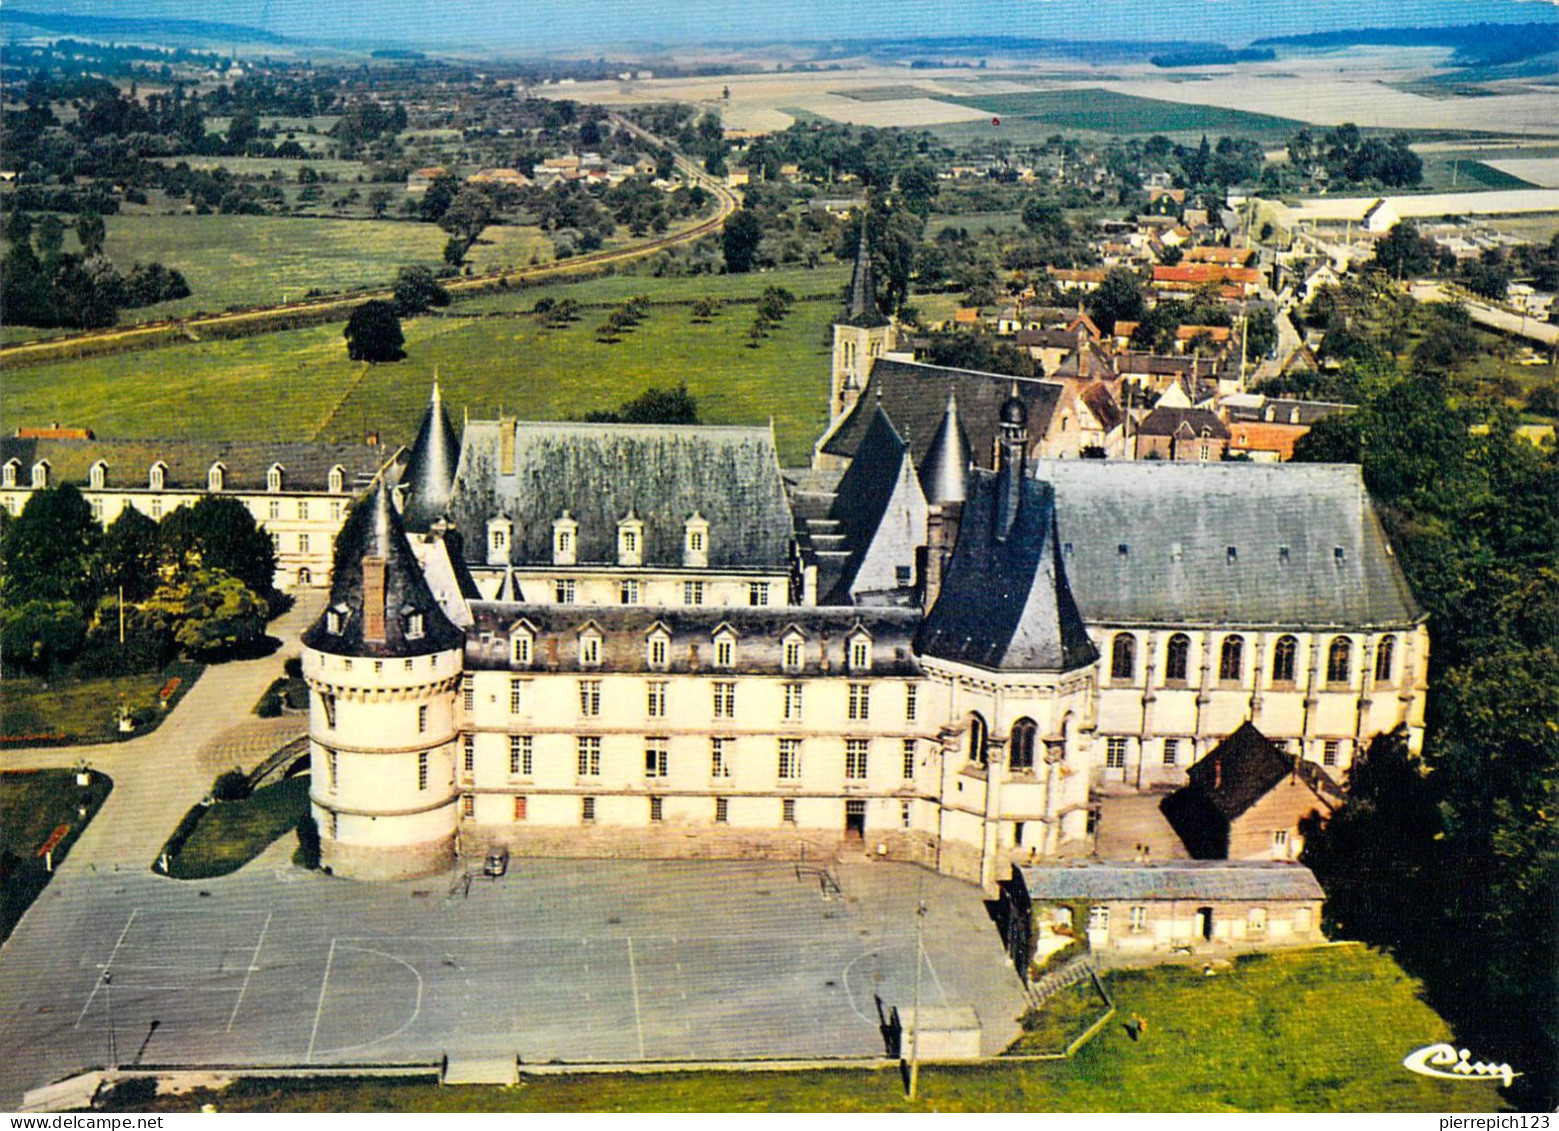 76 - Mesnières En Bray - Château De Mesnières - Institut Saint Joseph - Vue Aérienne - Mesnières-en-Bray